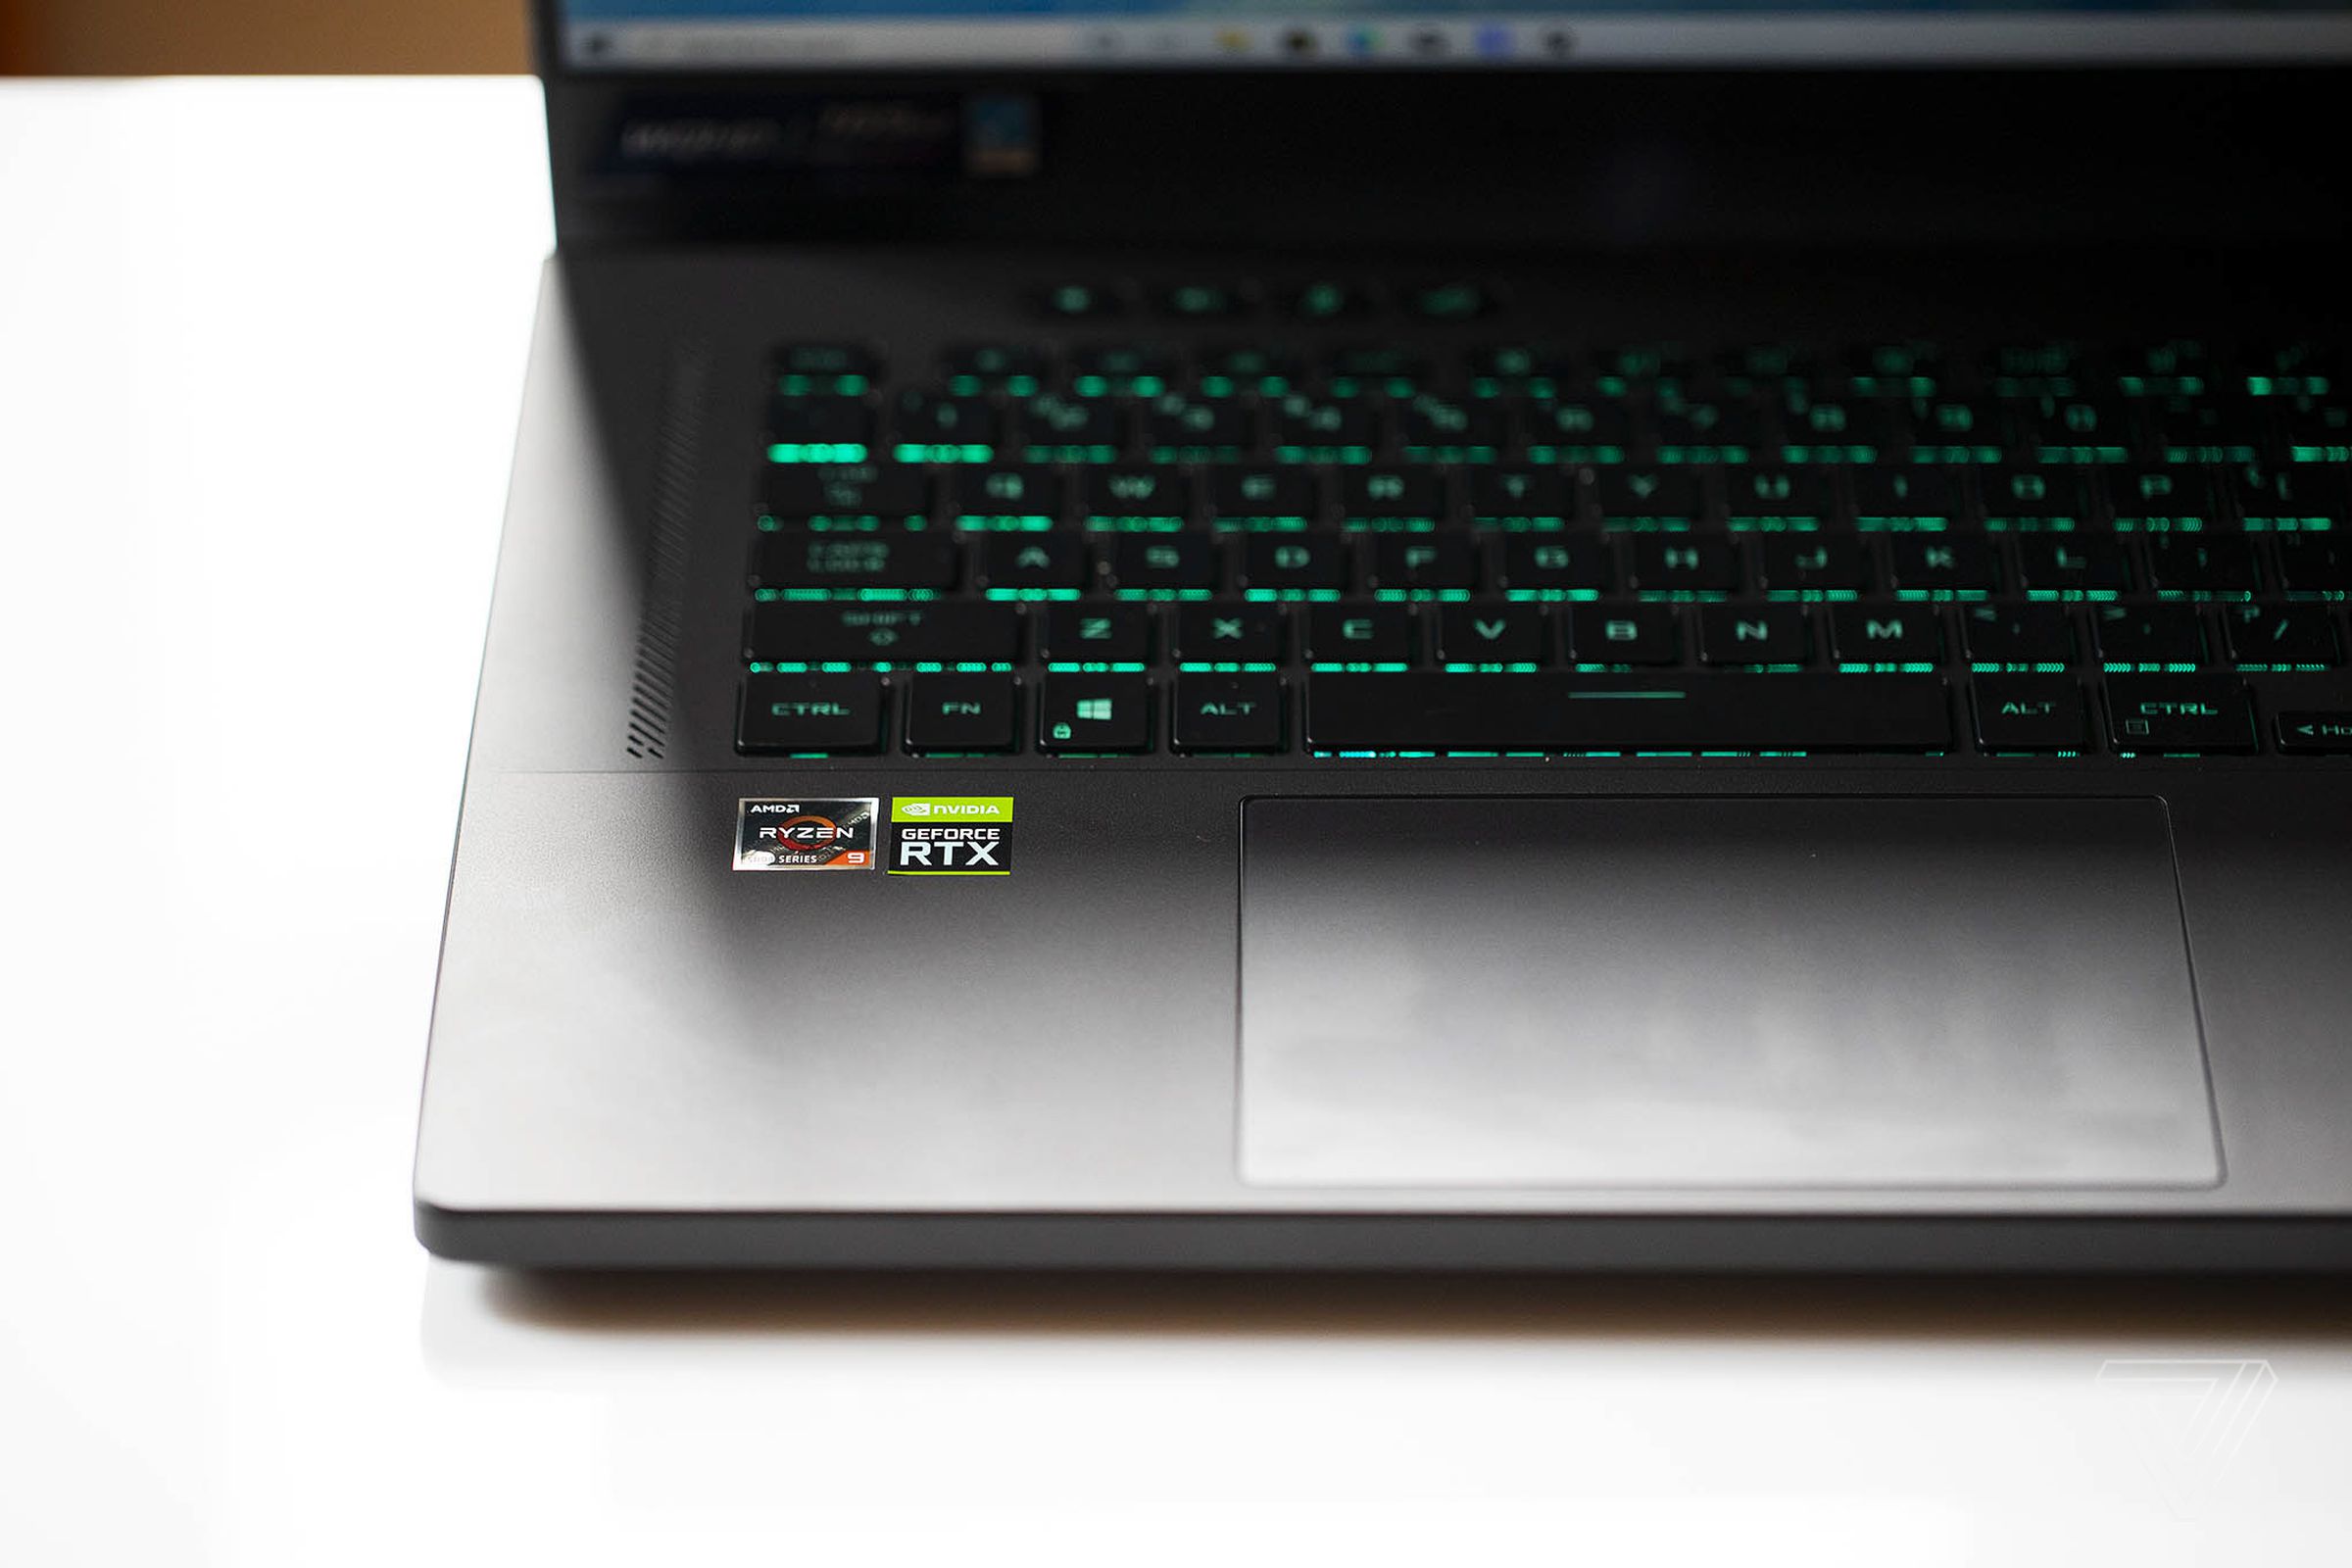 Best Gaming Laptop 2023: Asus ROG Zephyrus G15 gaming laptop